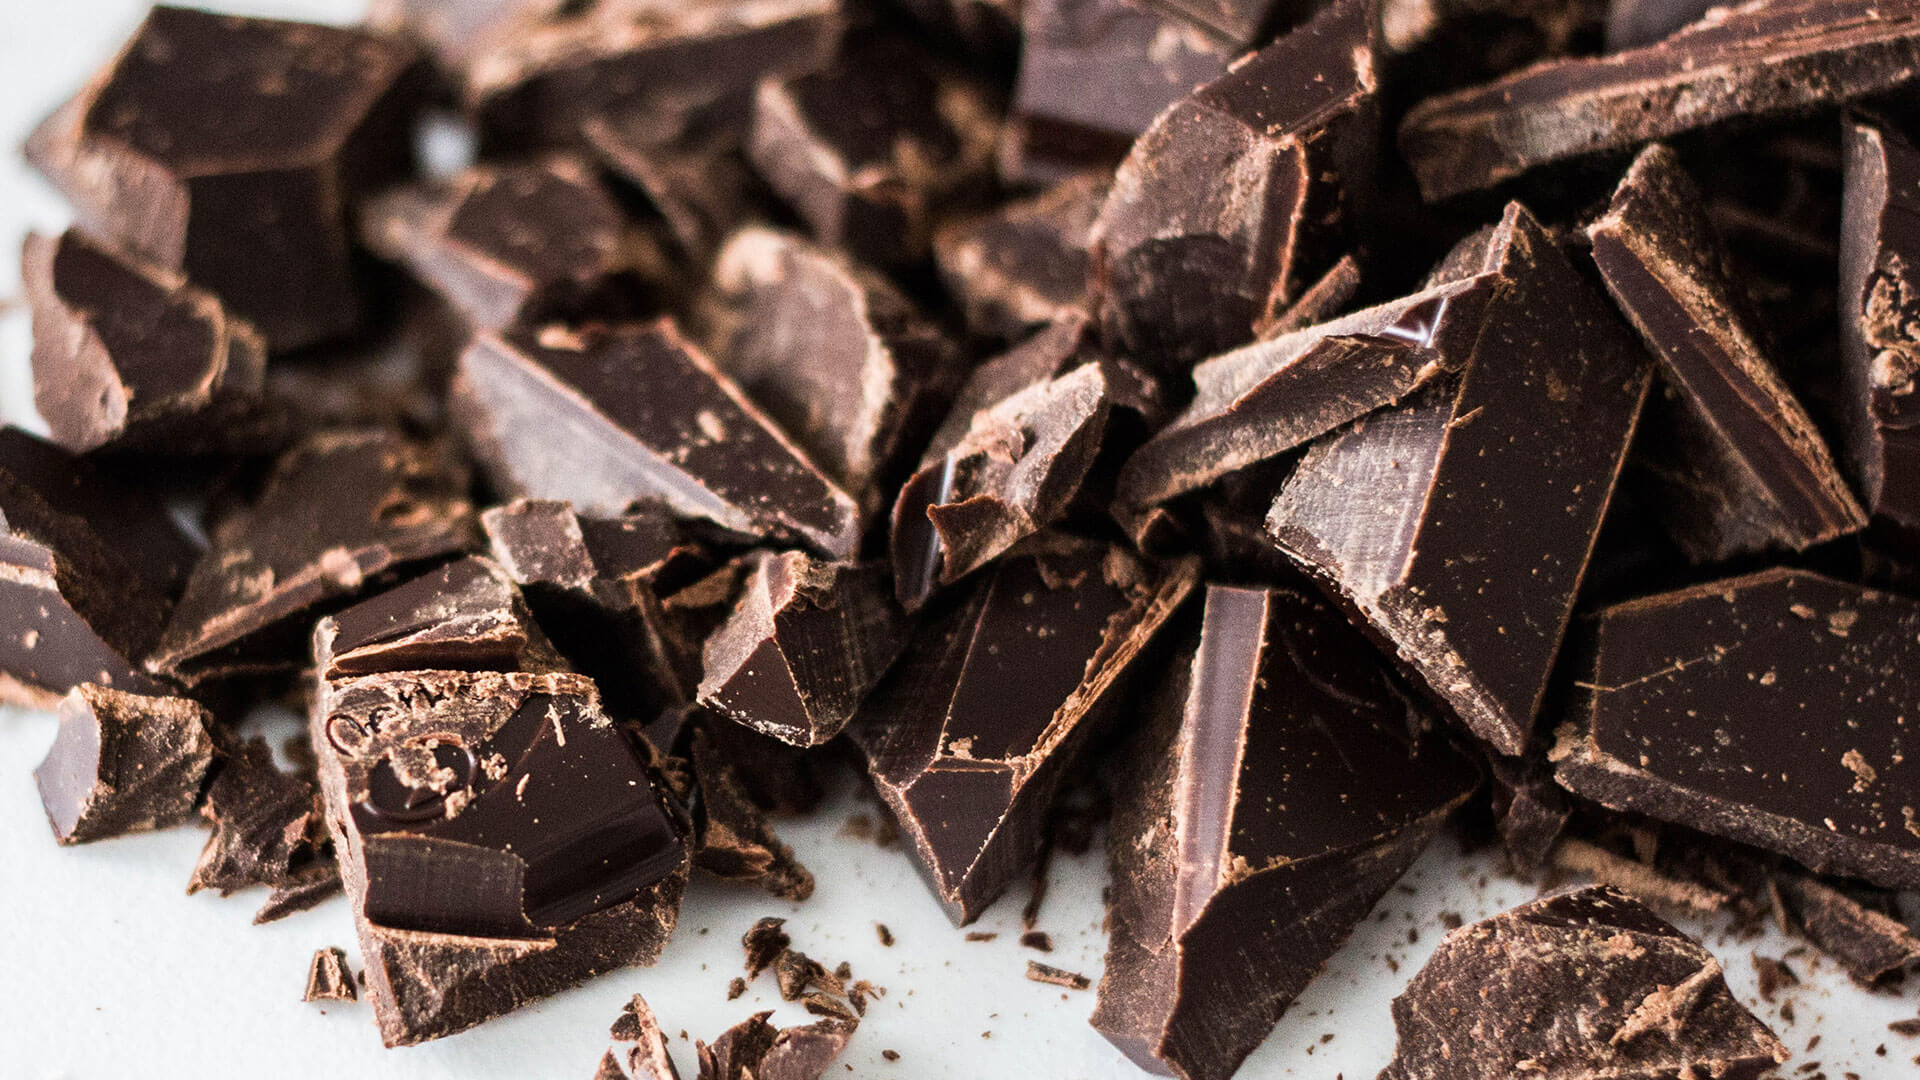 Brauchen wir Schokolade in unseren Sinnkrisen?